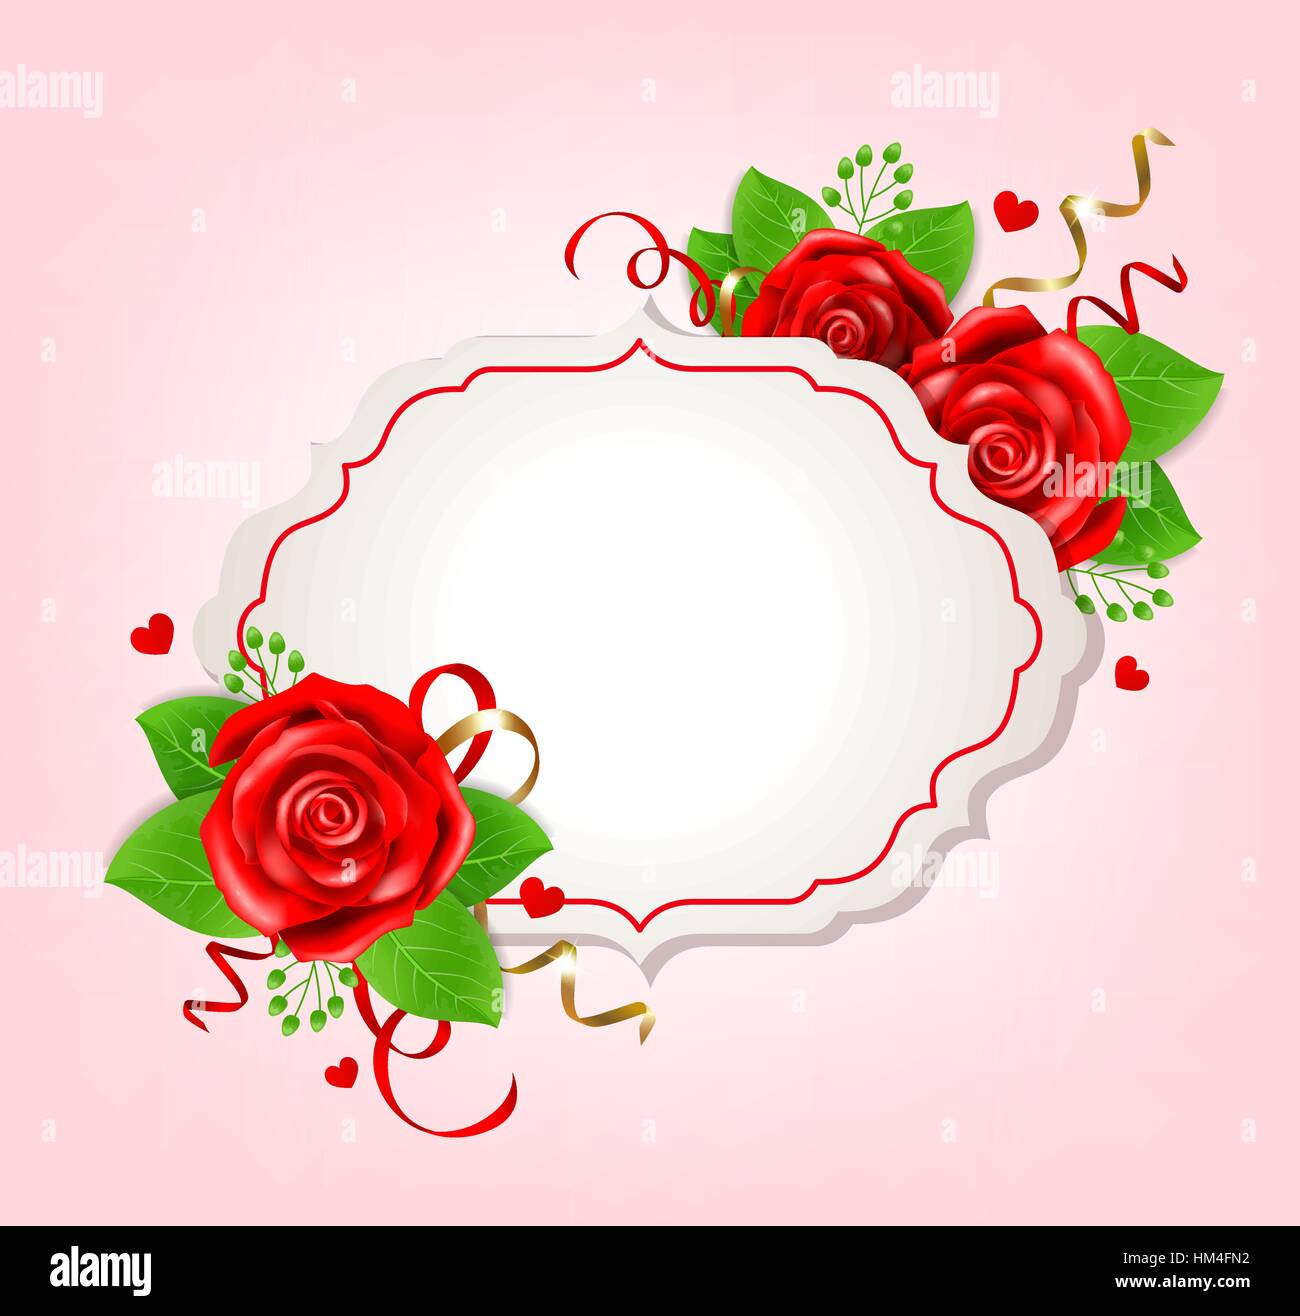 Dekorative romantische Banner zum Valentinstag mit roten Rosen und grünen Blättern Stock Vektor